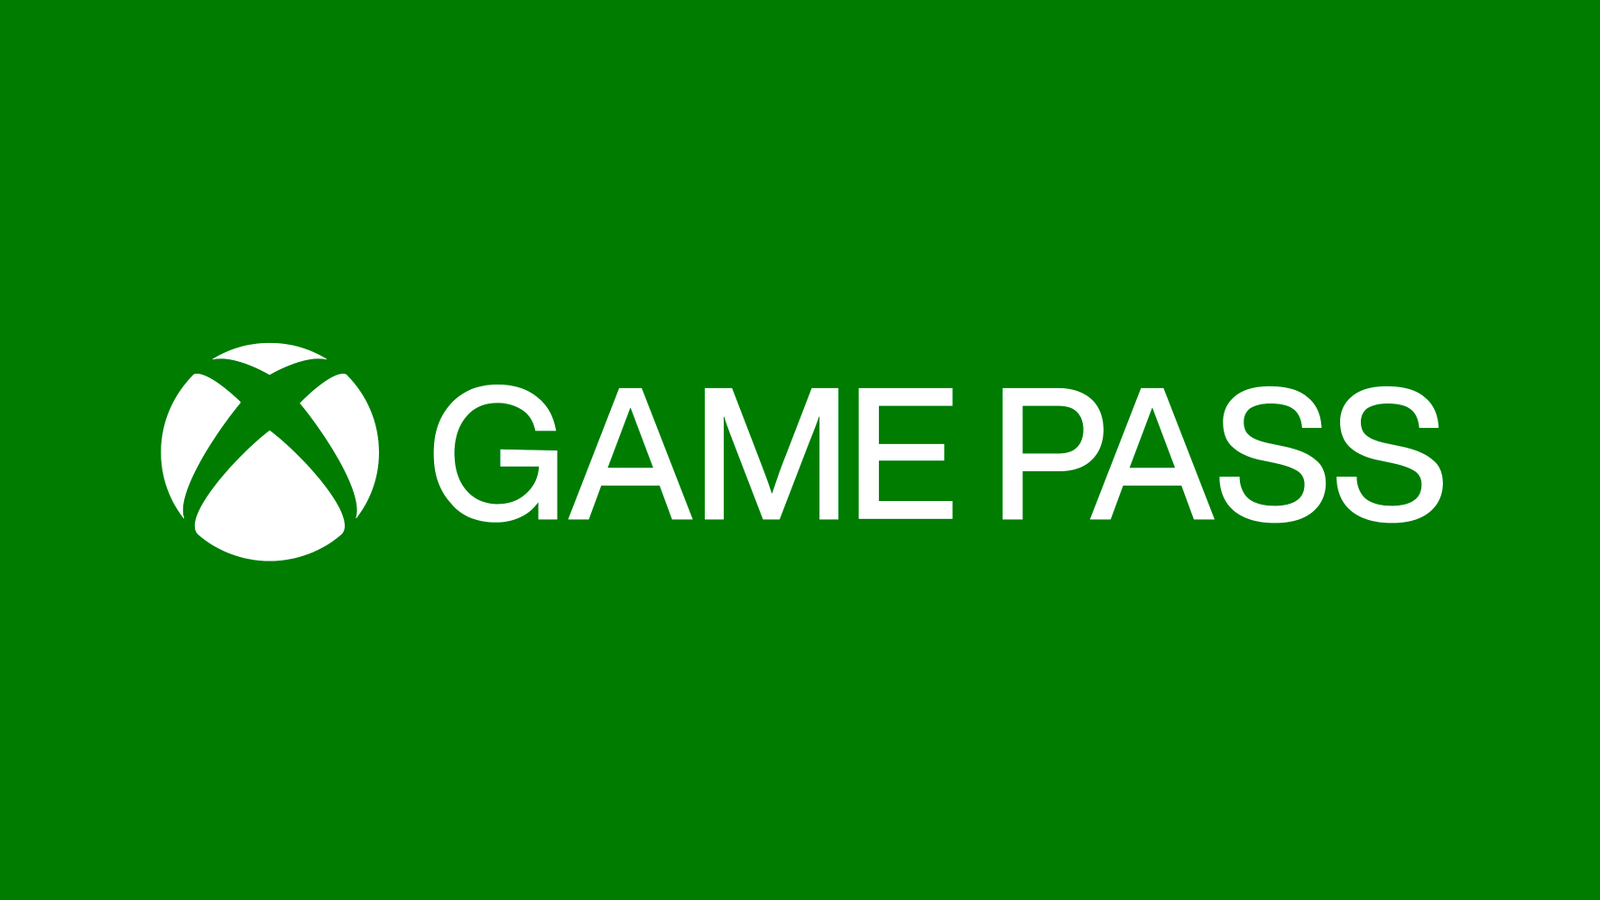 El multijugador online para los juegos free-to-play en Xbox se